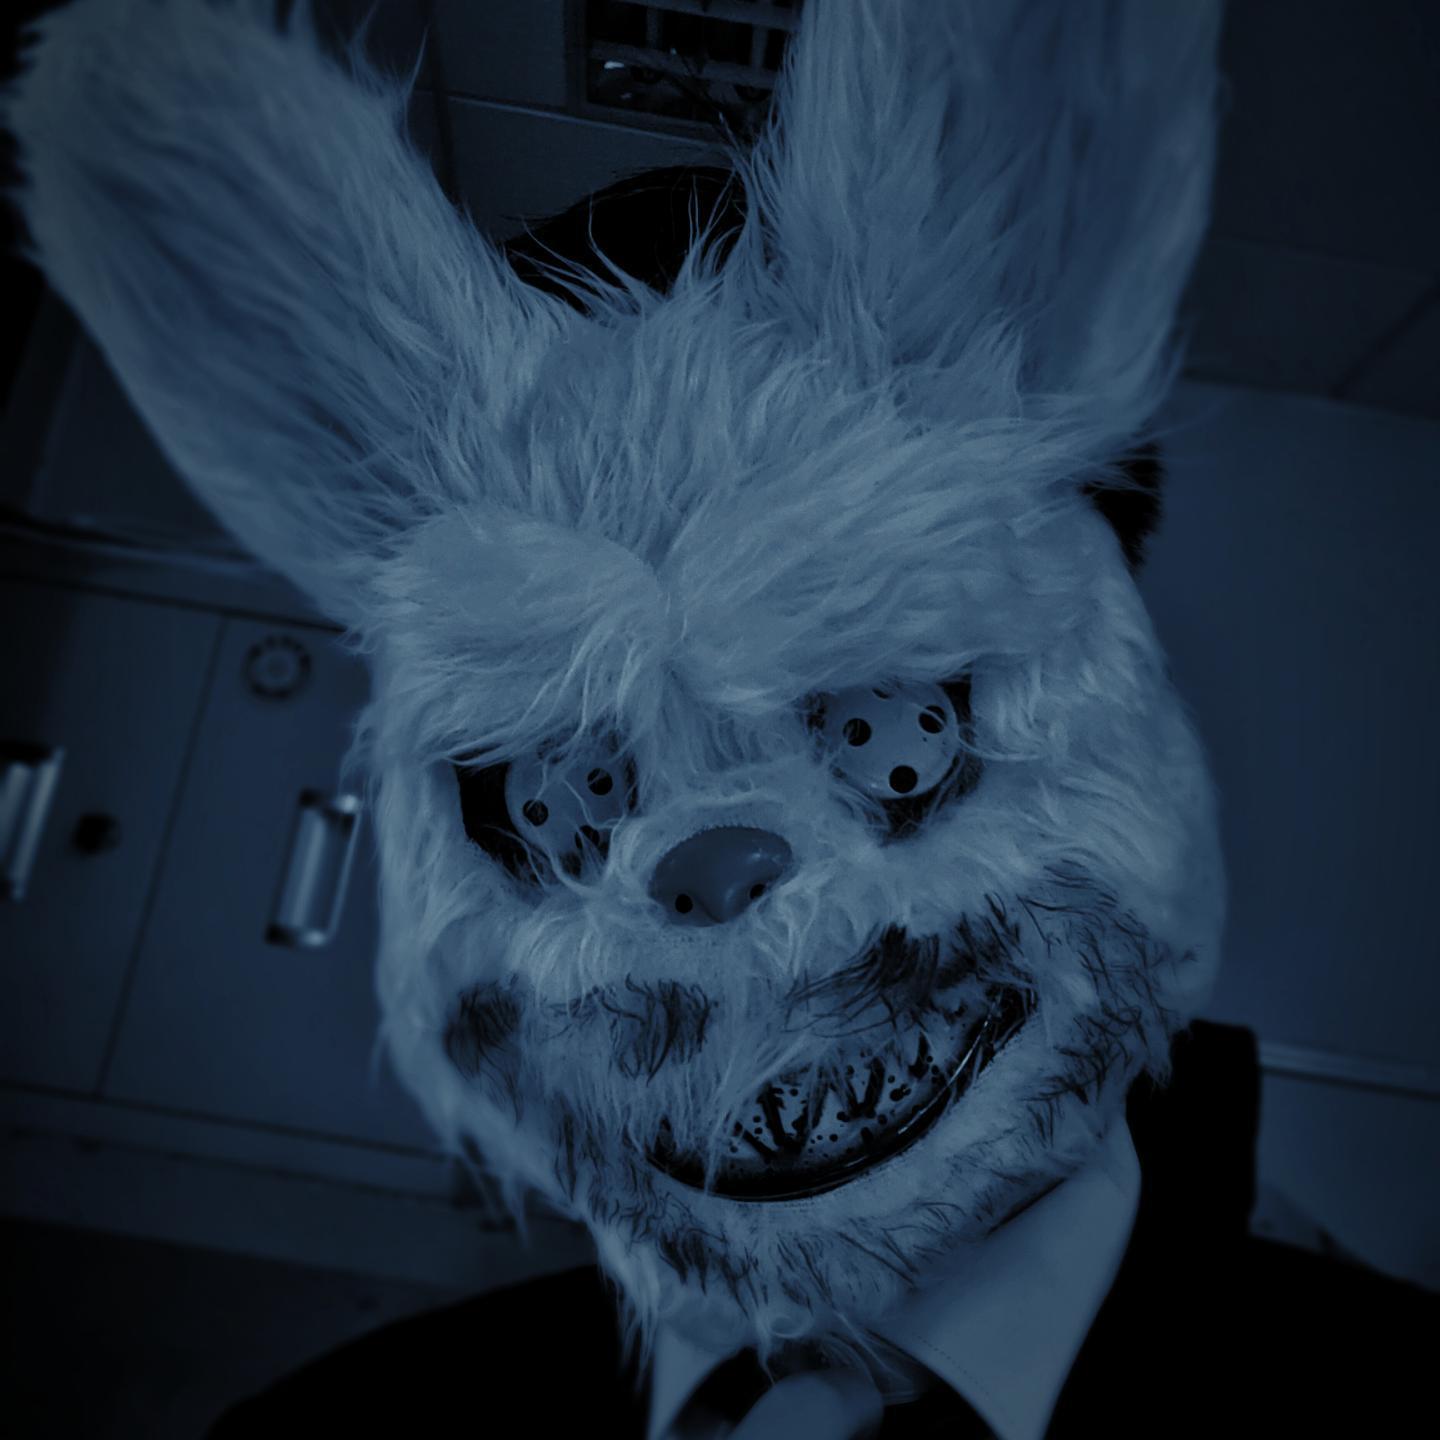 血腥兔面具头套jk恶魔兔子恐怖吓人万圣节鬼脸网红学生杀手兔拍照